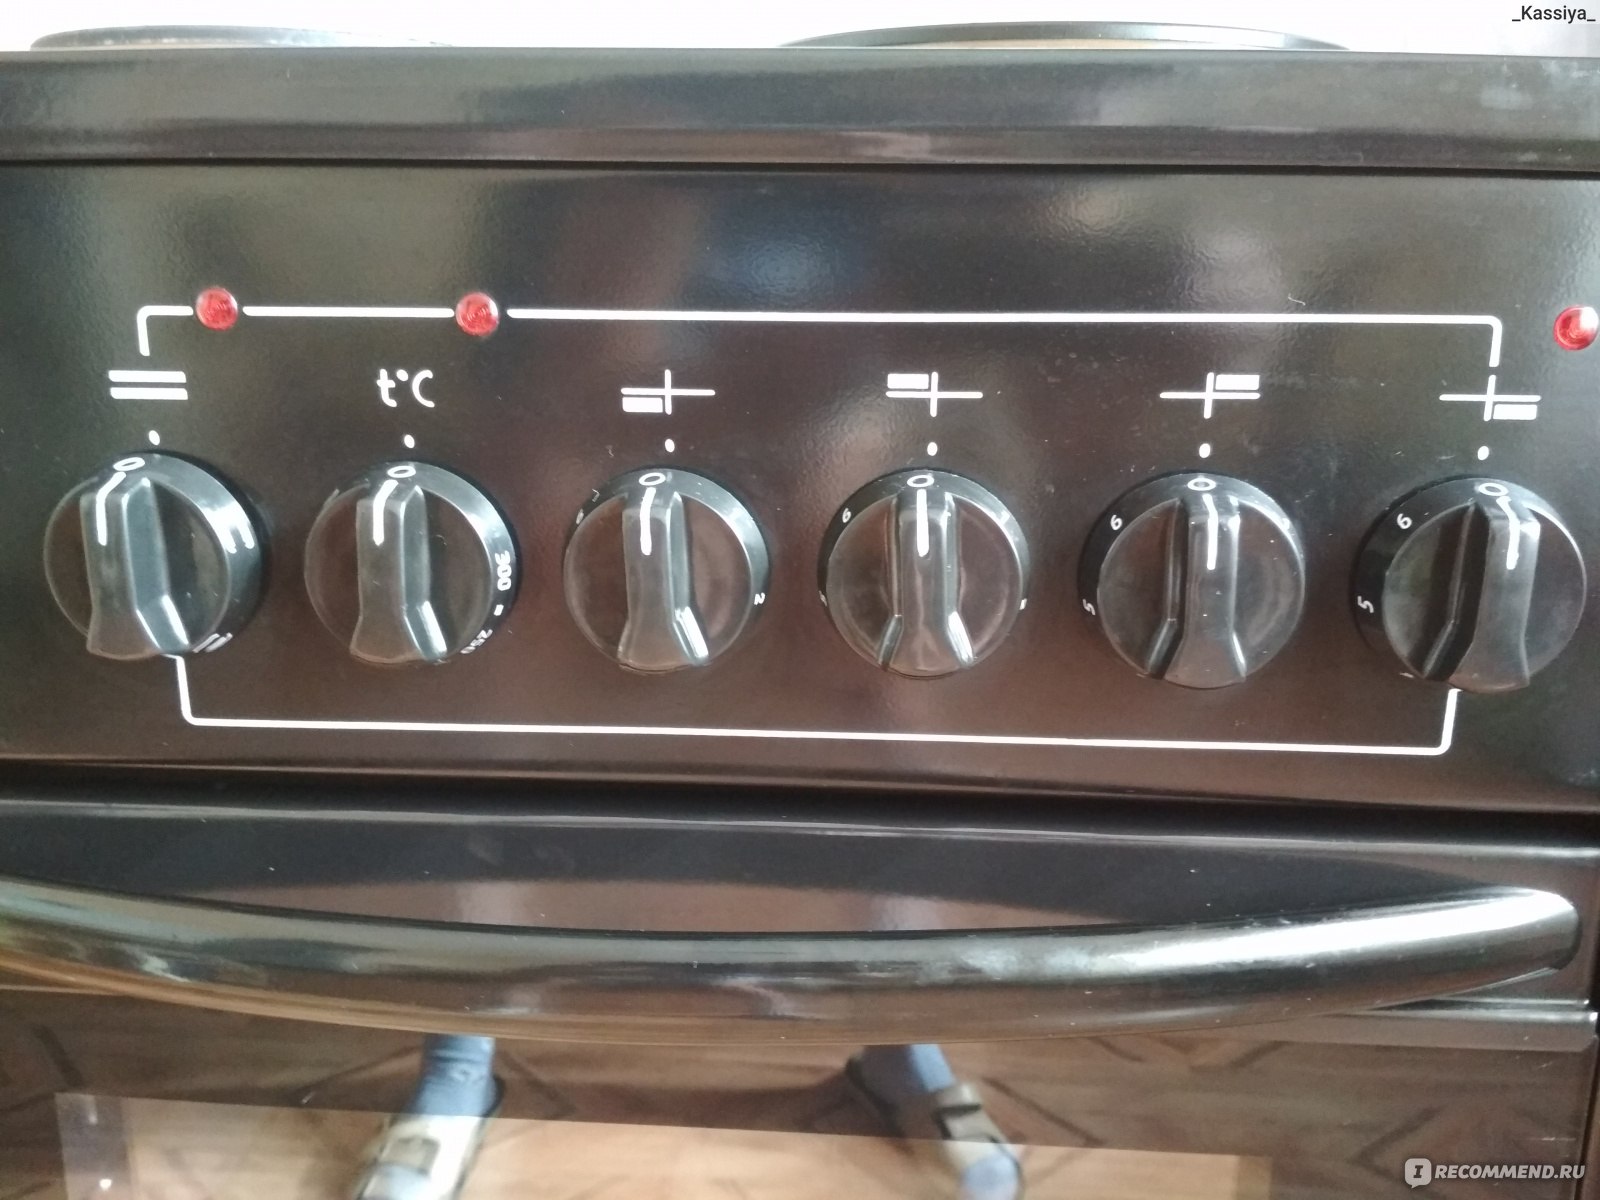 Плита Лысьва эп401 переключатель температуры духовки